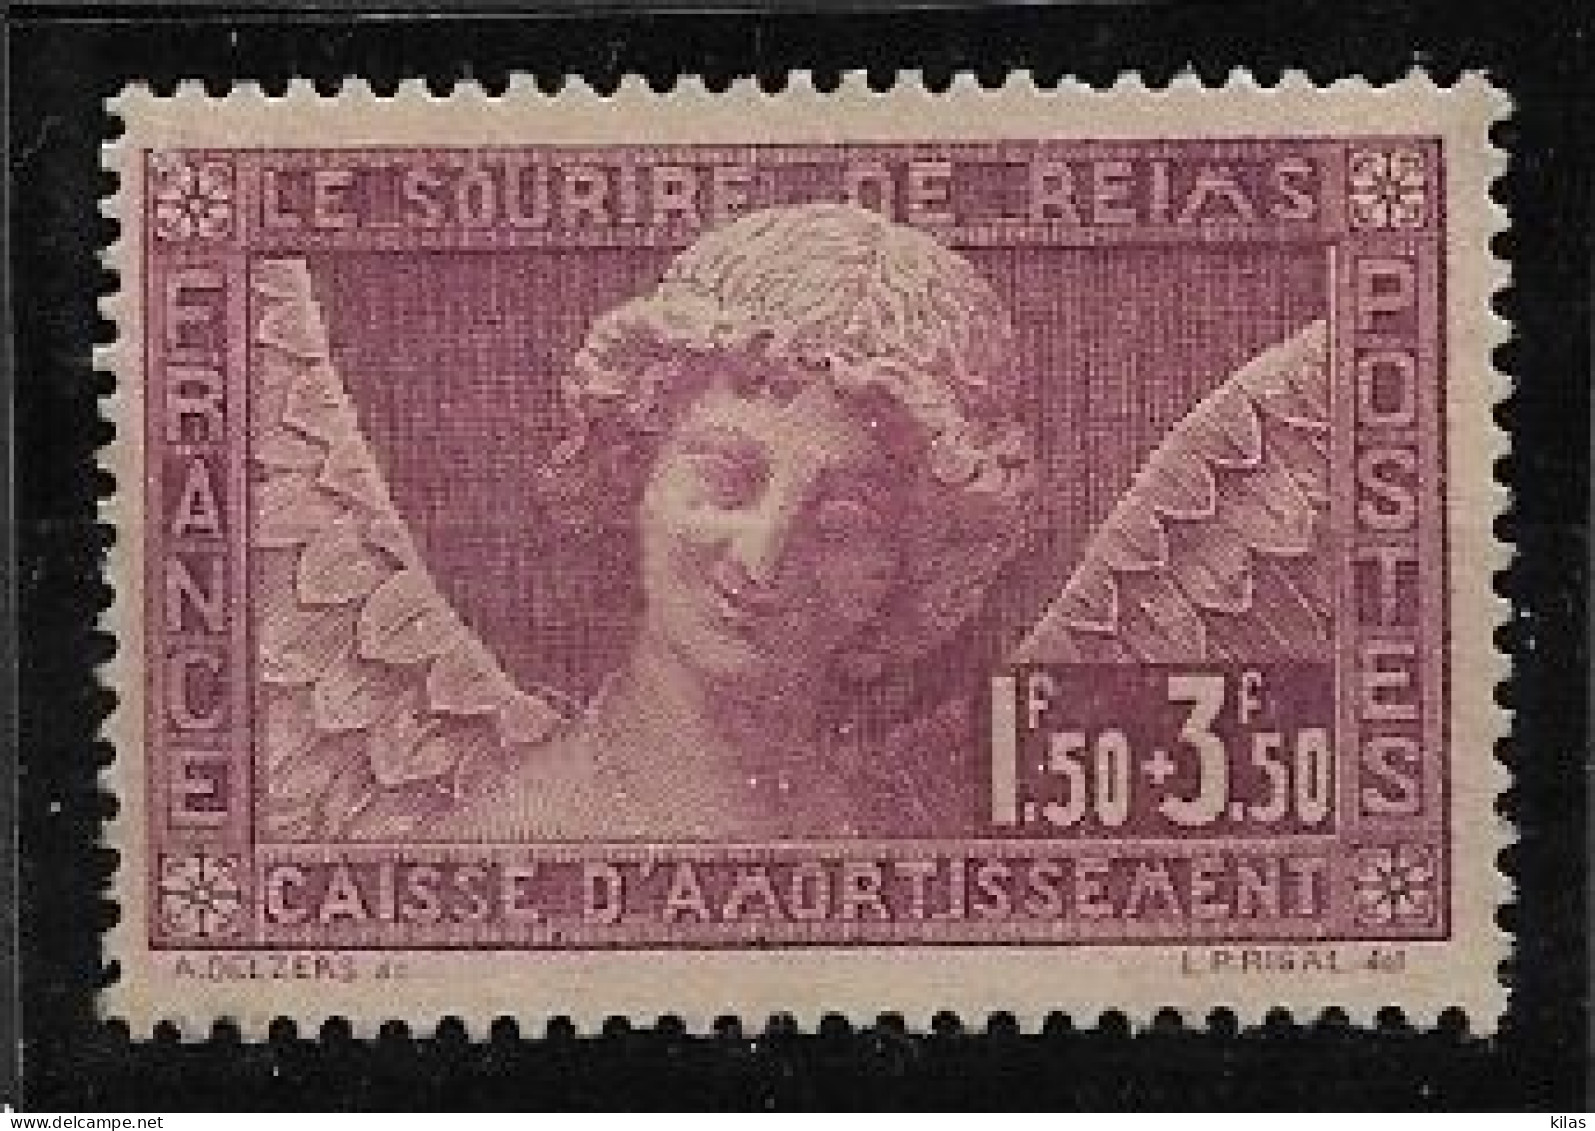 FRANCE 1930 Caisse D'Amortissement "Sourire De Reims" MNH - Nuevos